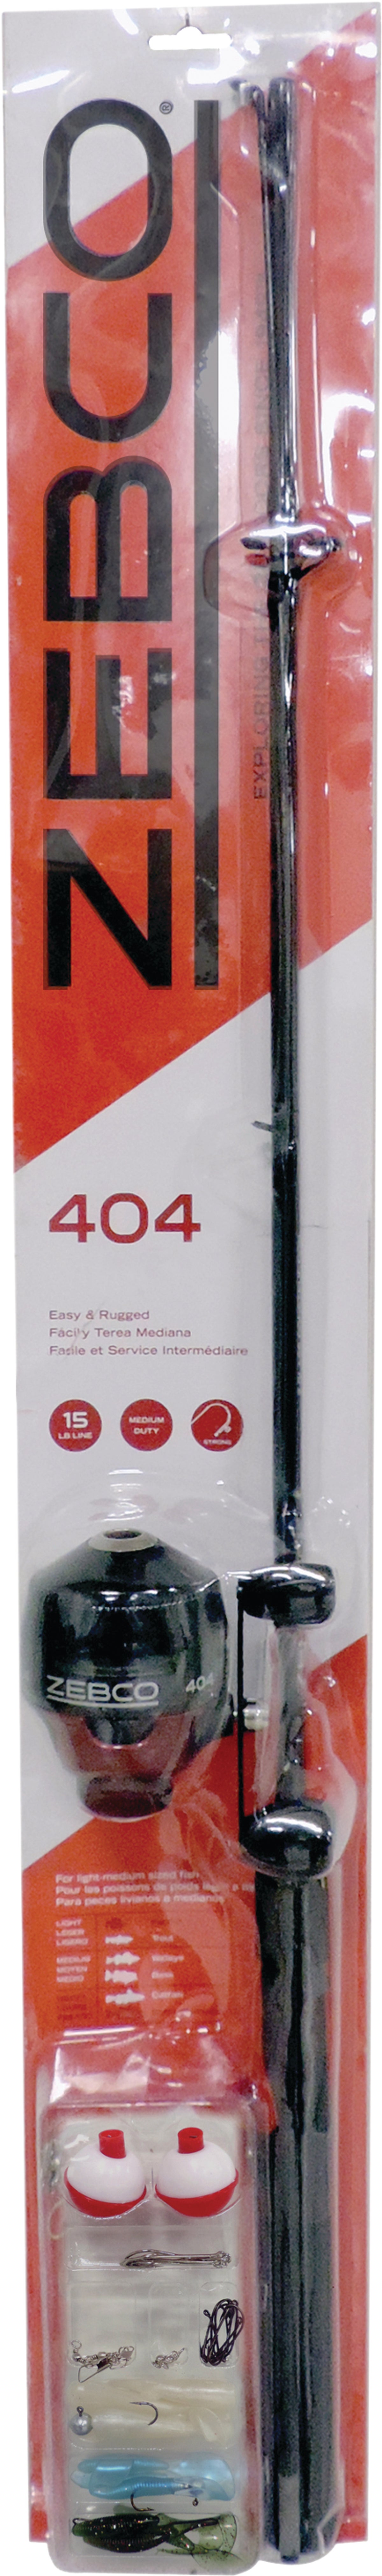 Buy Zebco 404 Fishing Rod & Spincast Reel